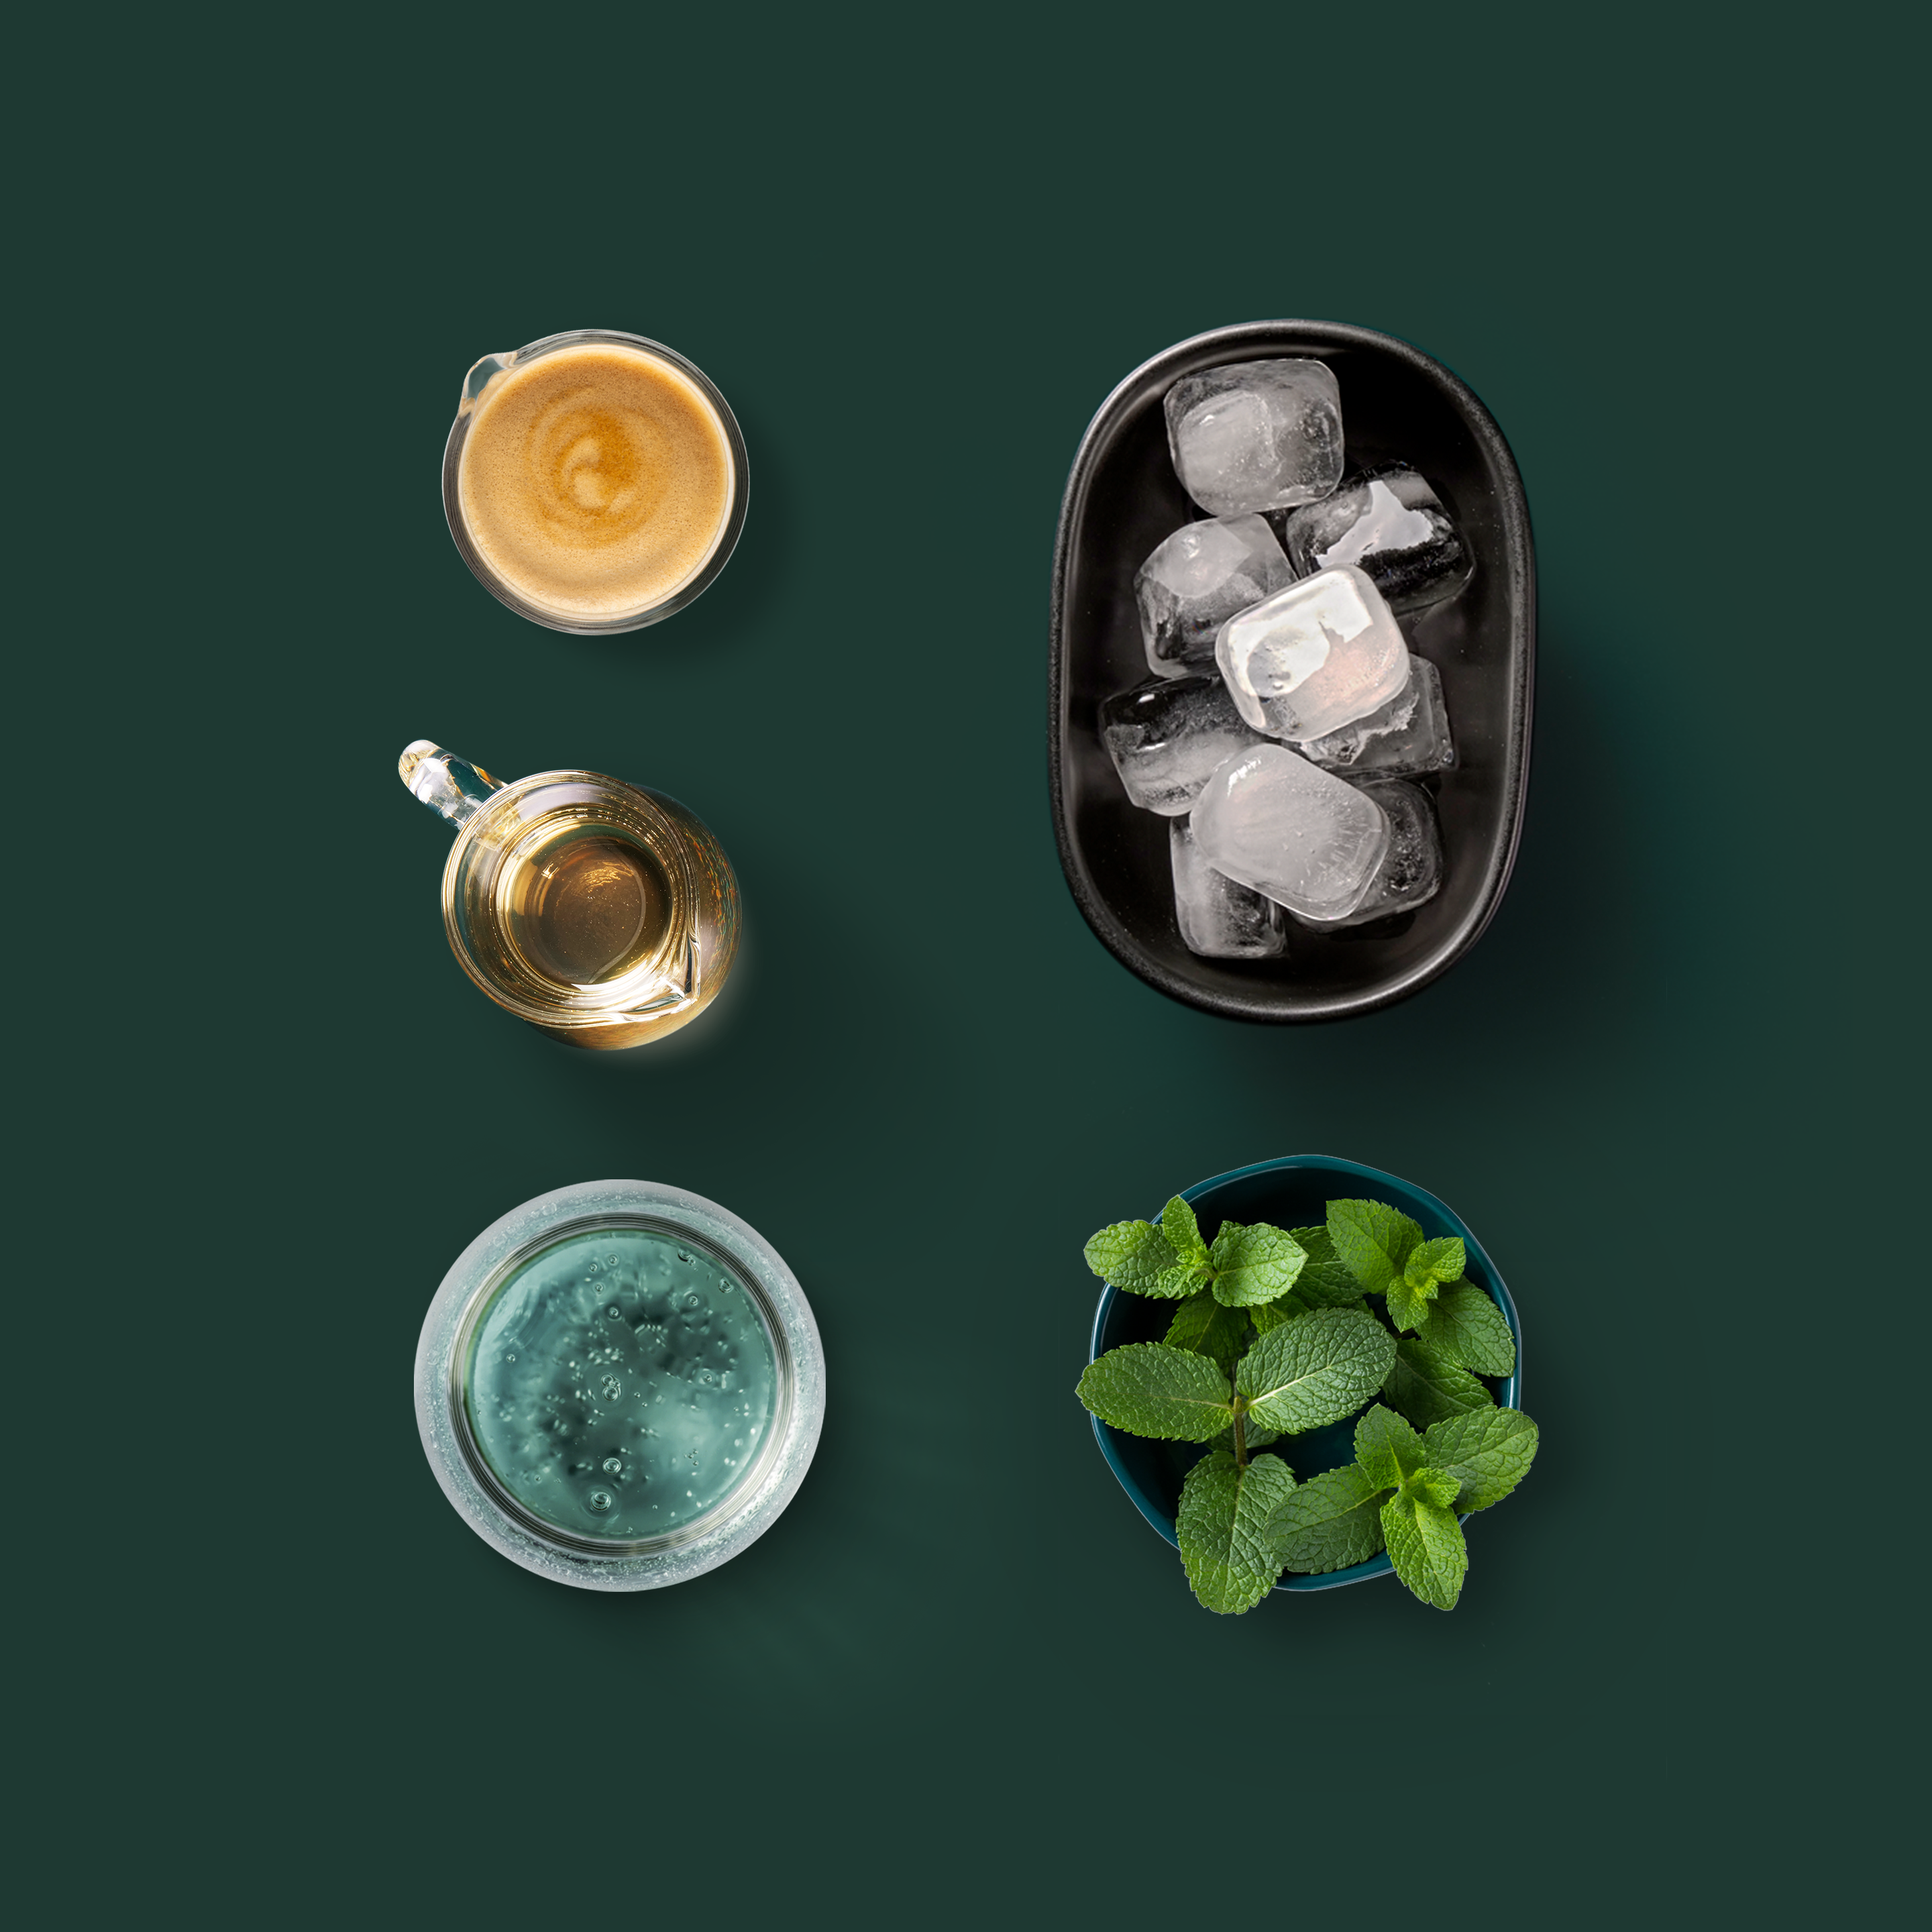 Sparkling Mint Espresso Ingredients